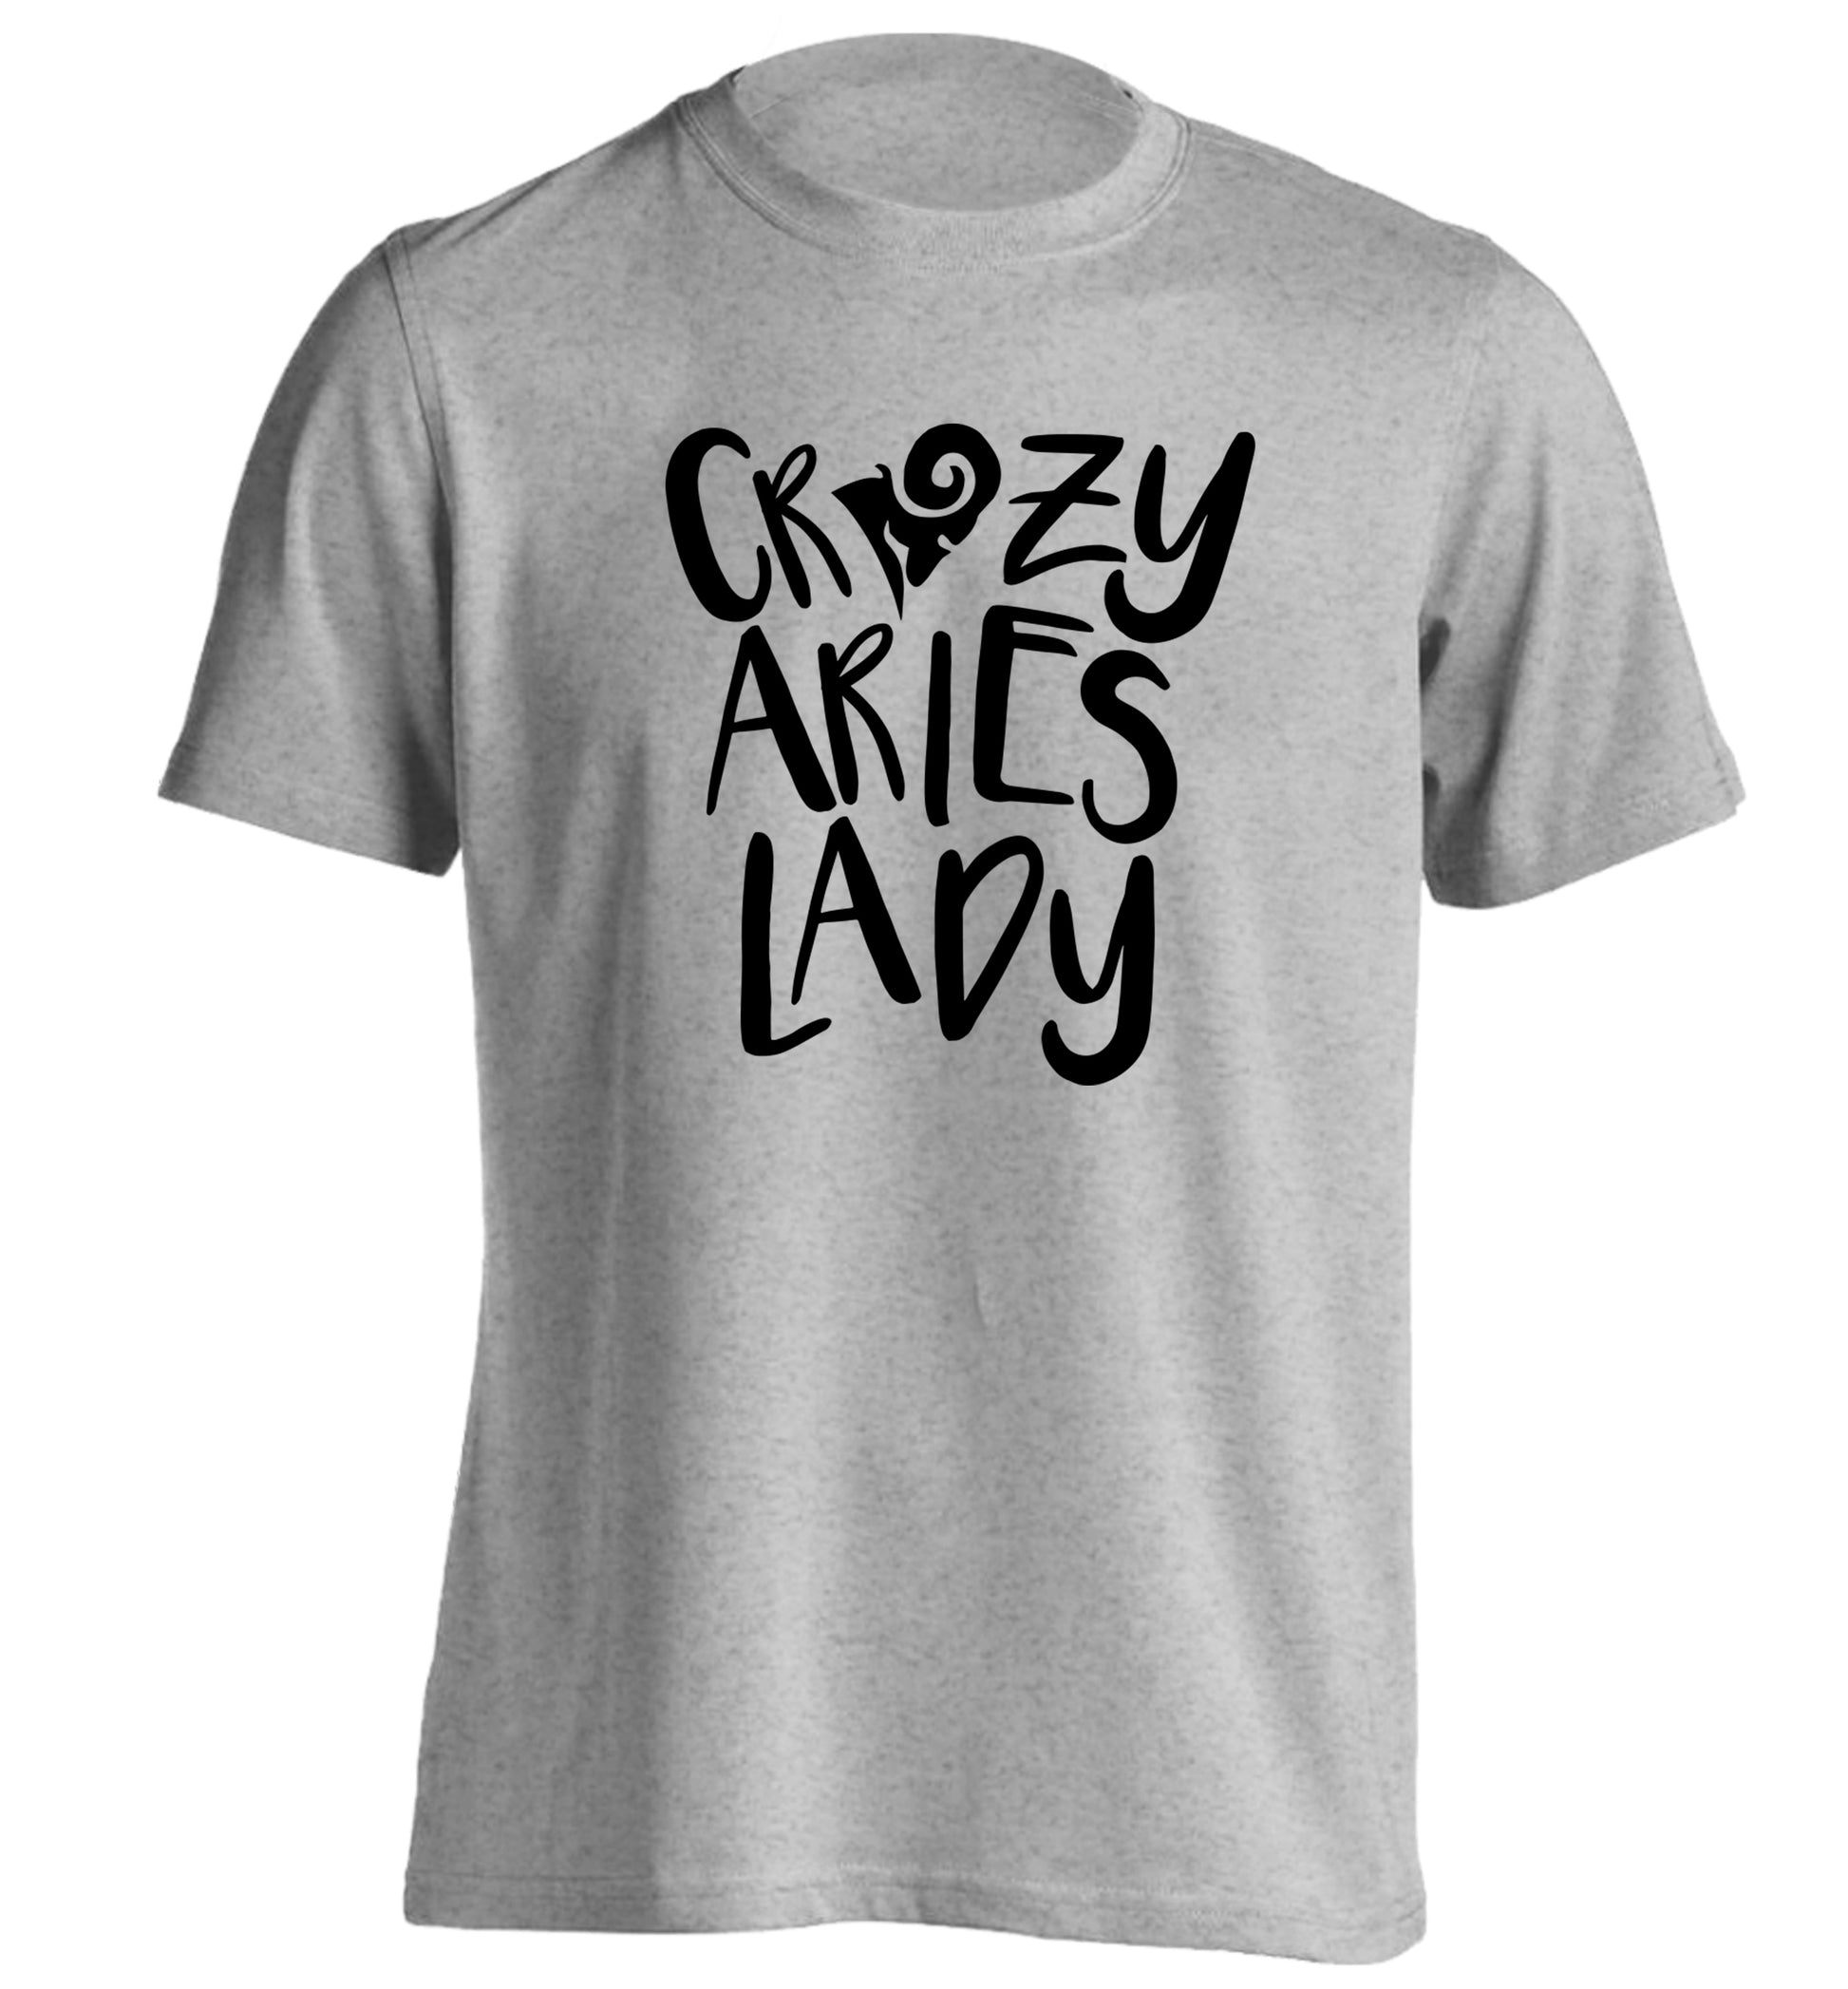 Crazy aries lady adults unisex grey Tshirt 2XL